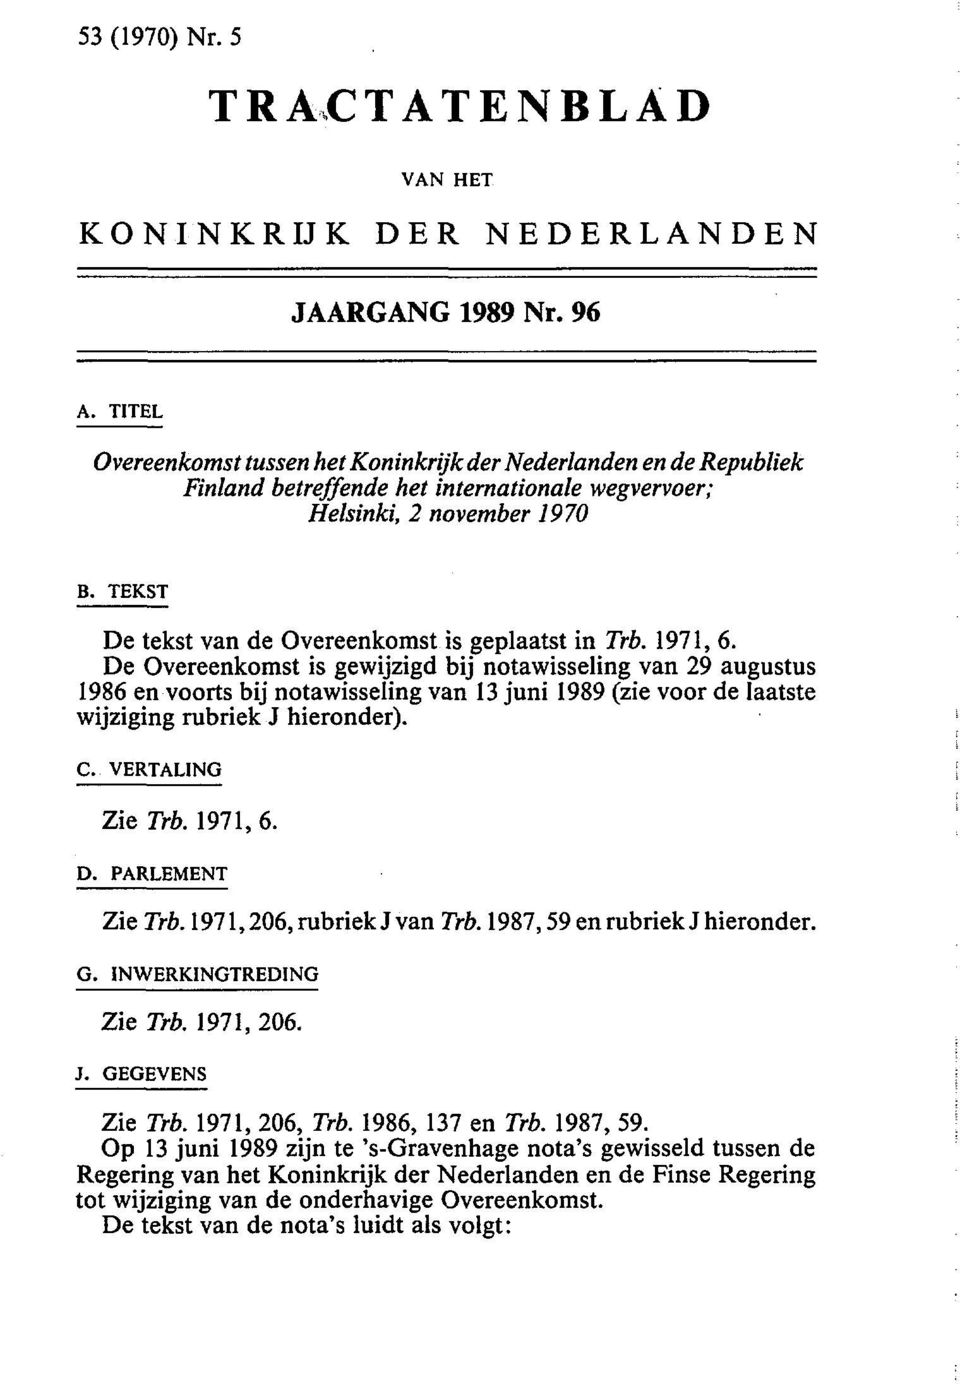 TEKST De tekst van de Overeenkomst is geplaatst in Trb. 1971, 6.